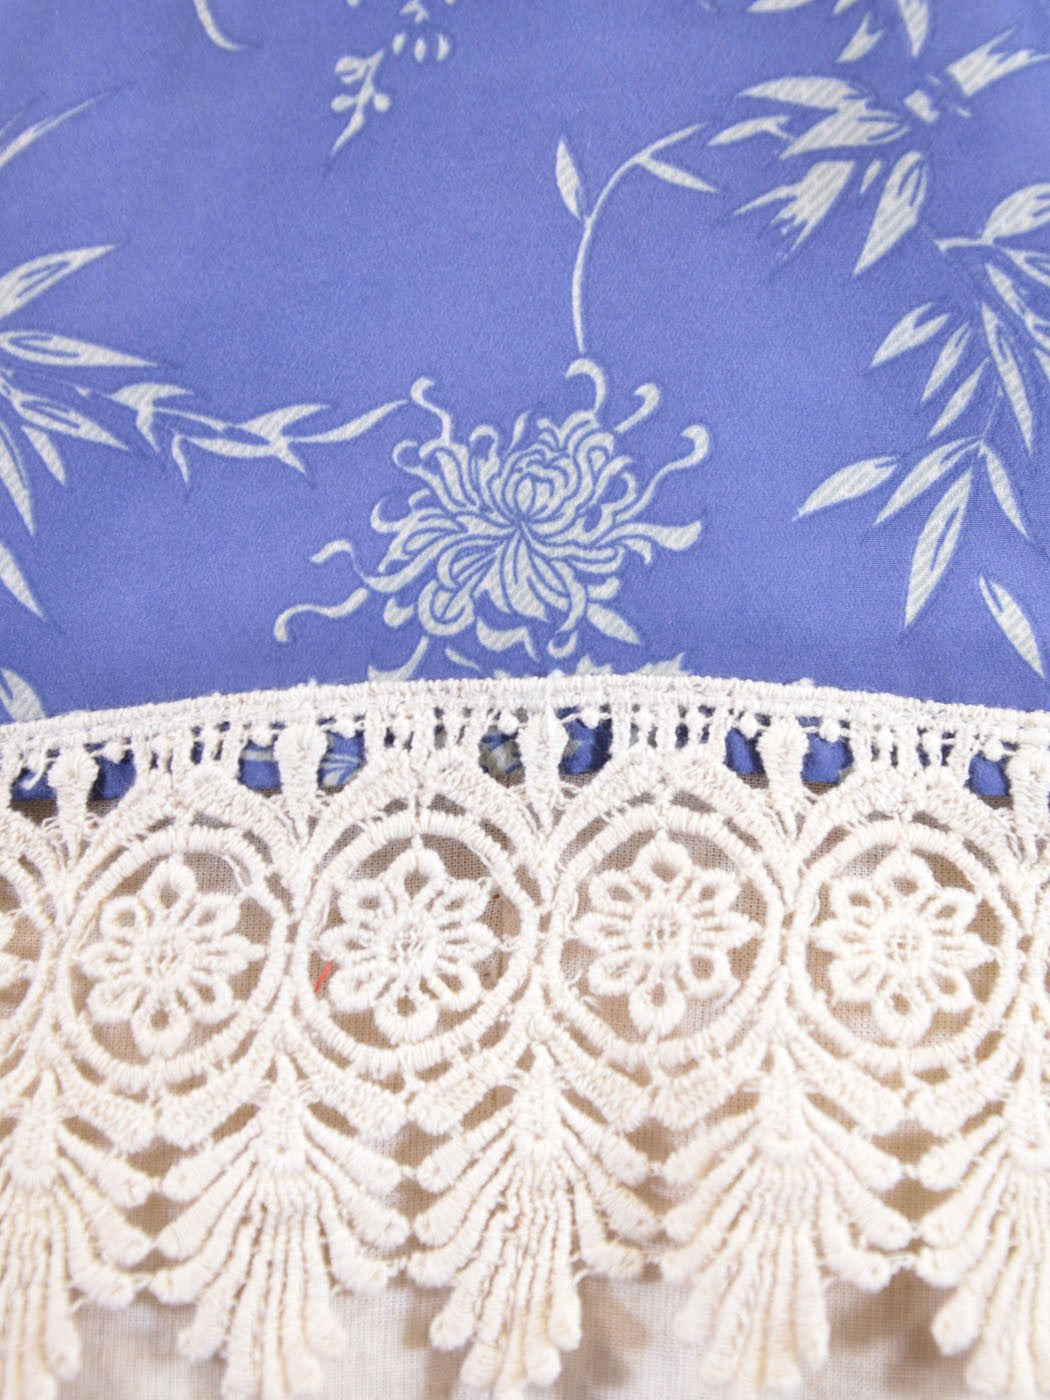 En Creme Oriental Floral Print Lace Trim Double T-Back Halter Blouse Top